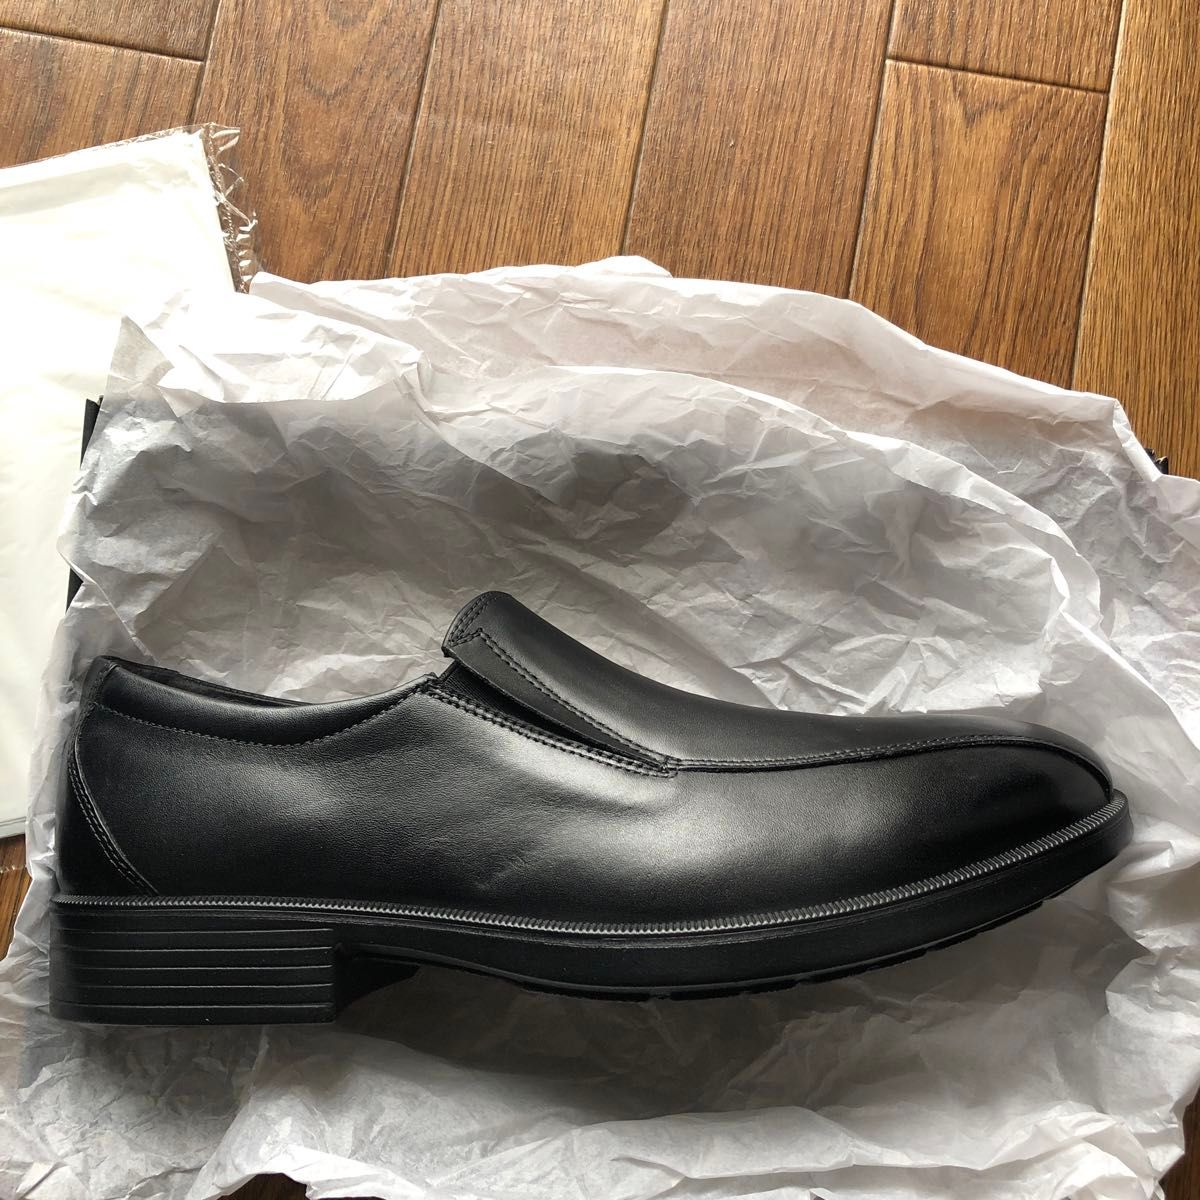 [オールデイウォーク] ビジネスシューズ 革靴 防水 幅広 本革 4E メンズ ADM 0070 ブラック 26.0 cm